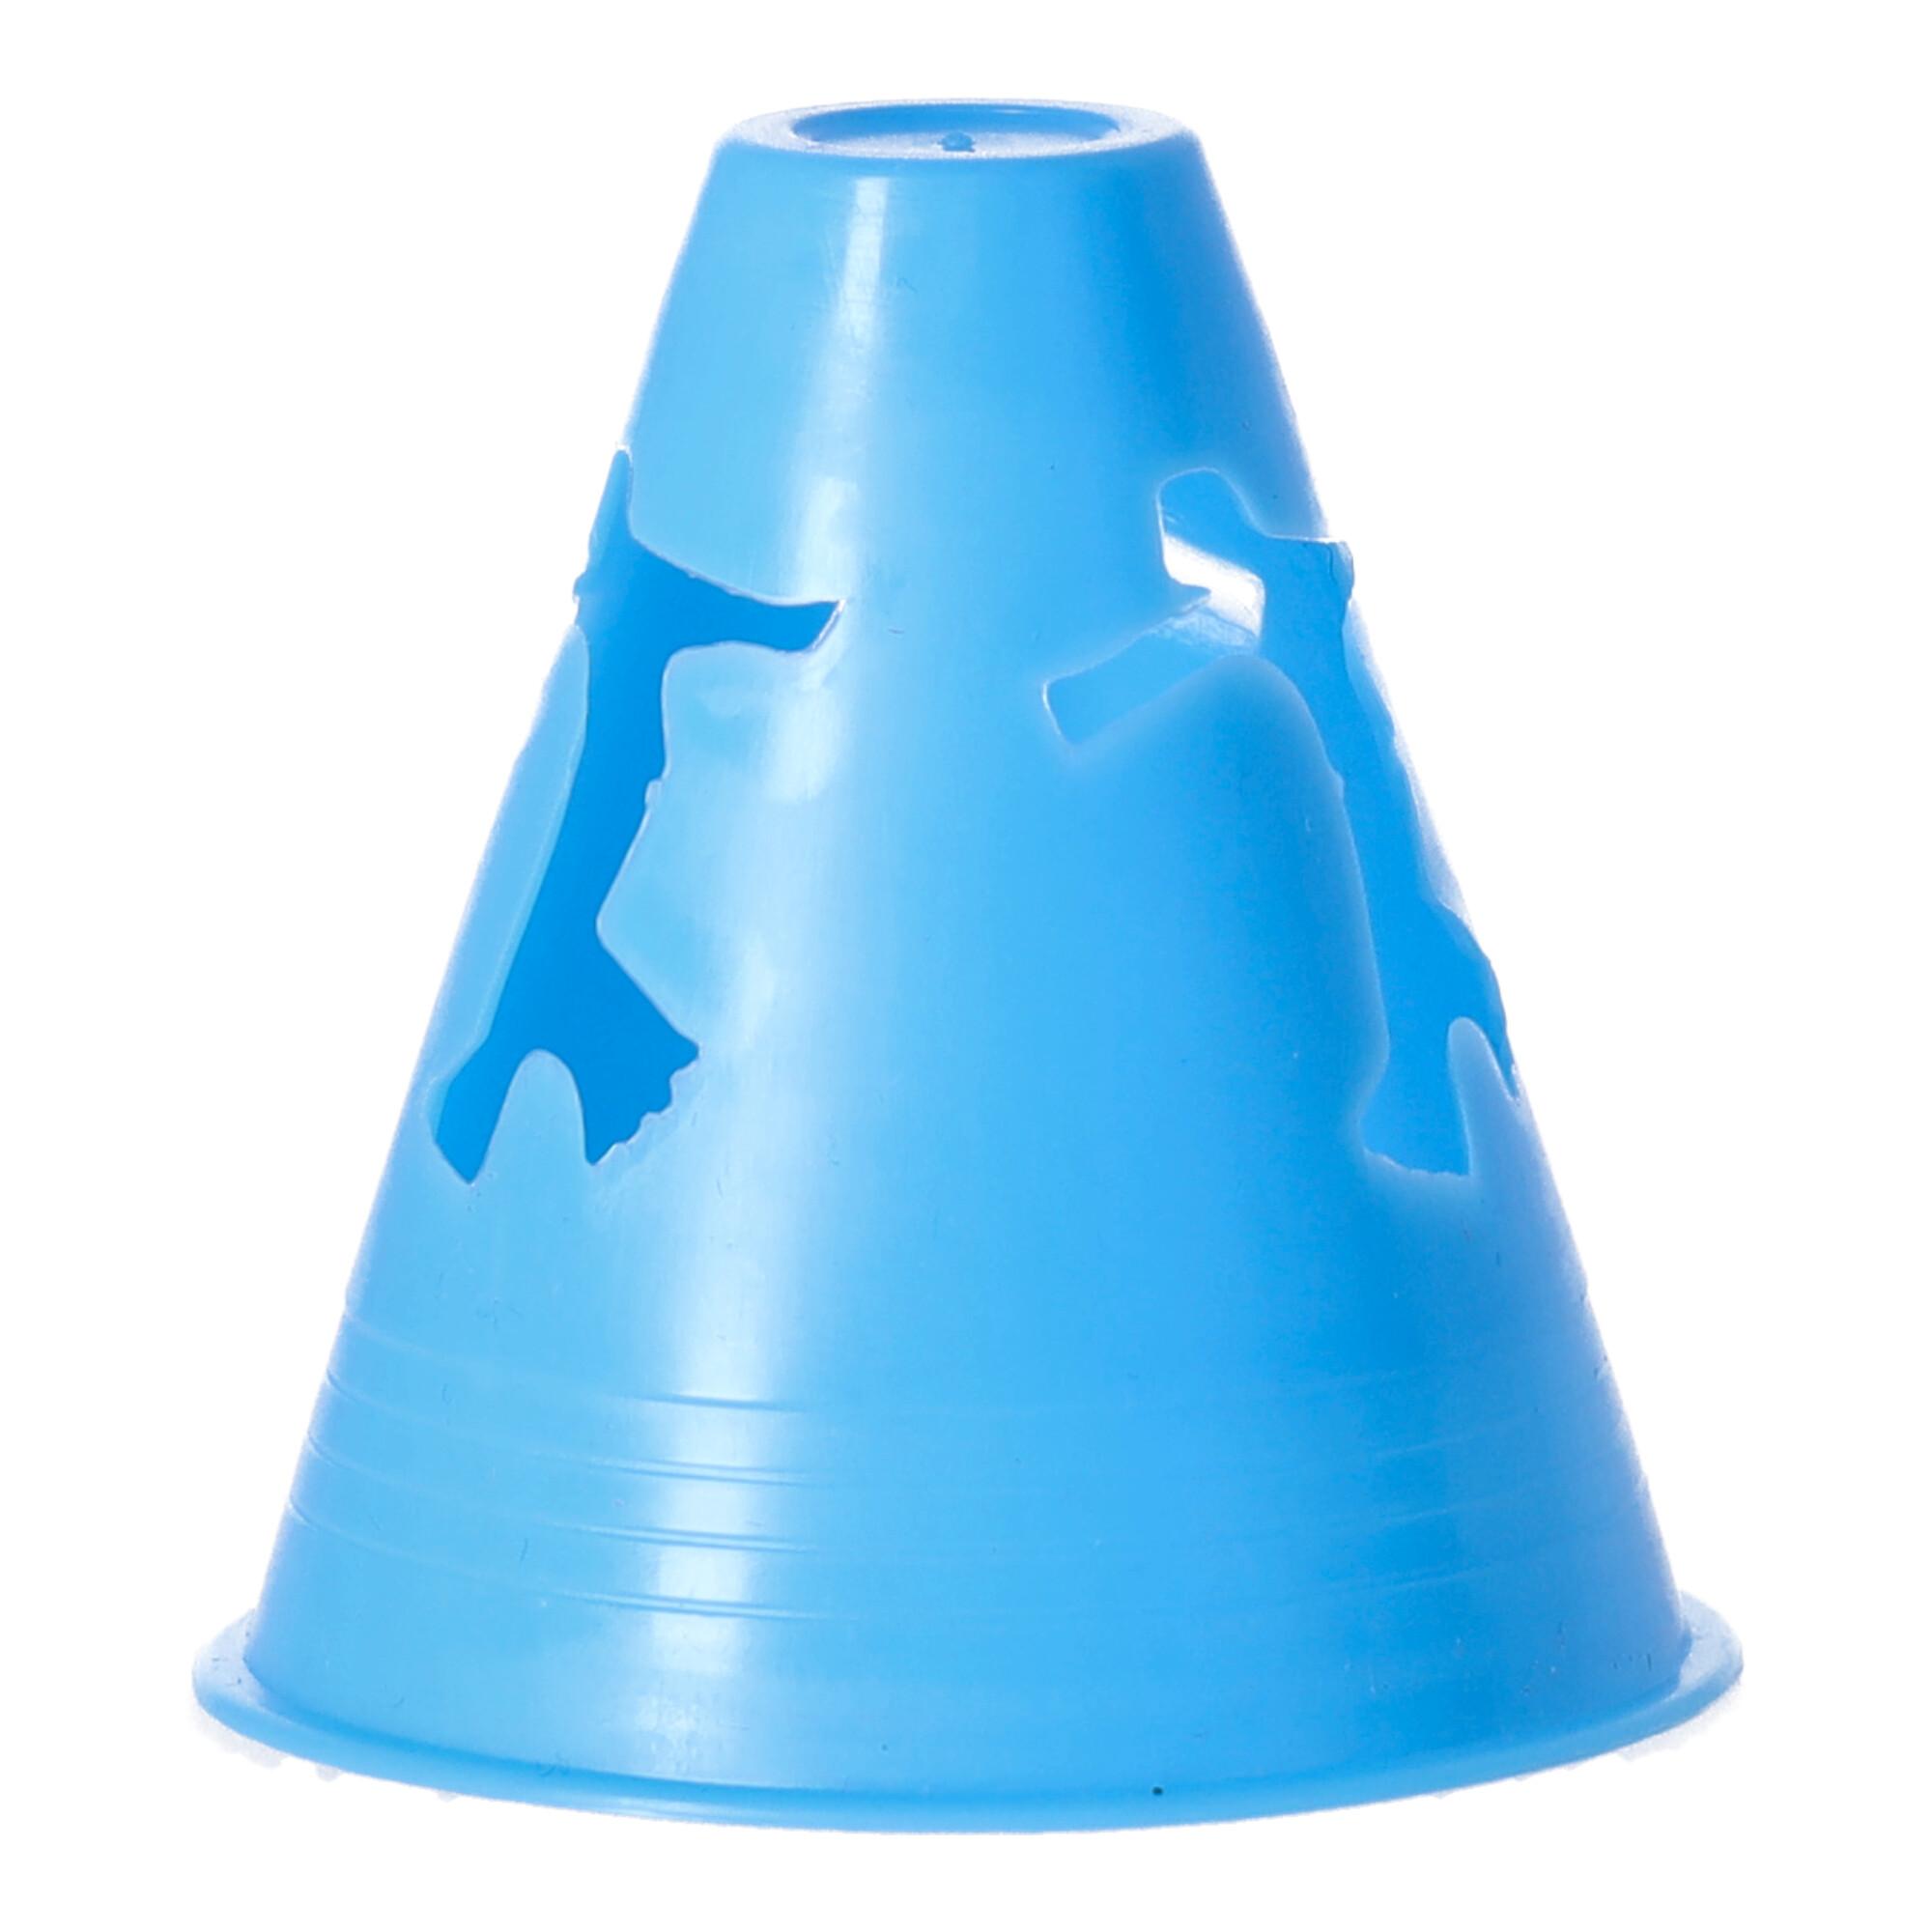 Slalom cones - blue